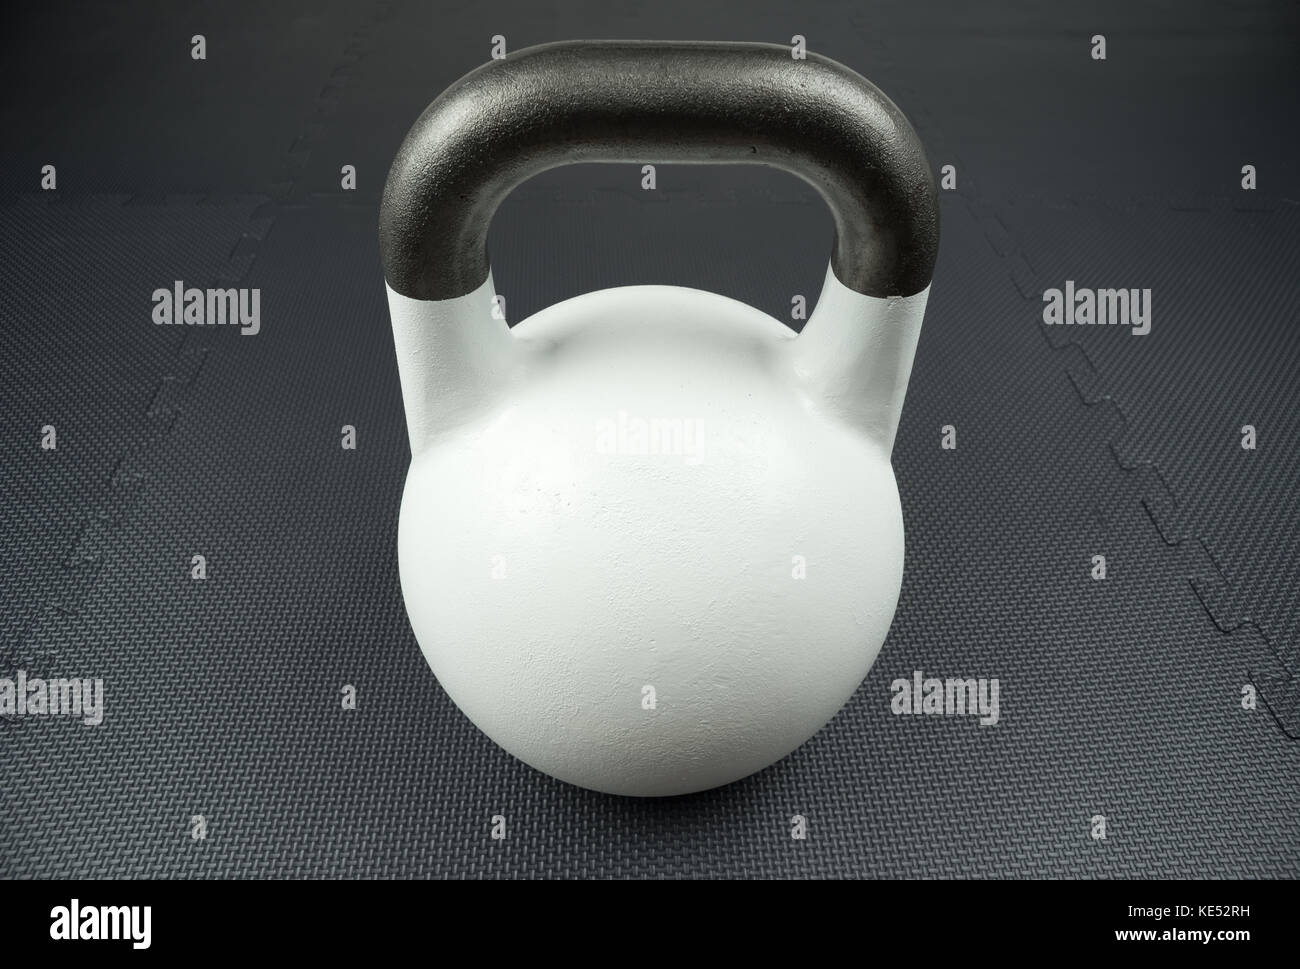 Weiß 10 kg kettlebell Wettbewerb auf einem Fitnessstudio Fitnessstudio, mit Gummi Fliesen. Potenzielle text/Raum schreiben in der Mitte des kettlebell. Stockfoto